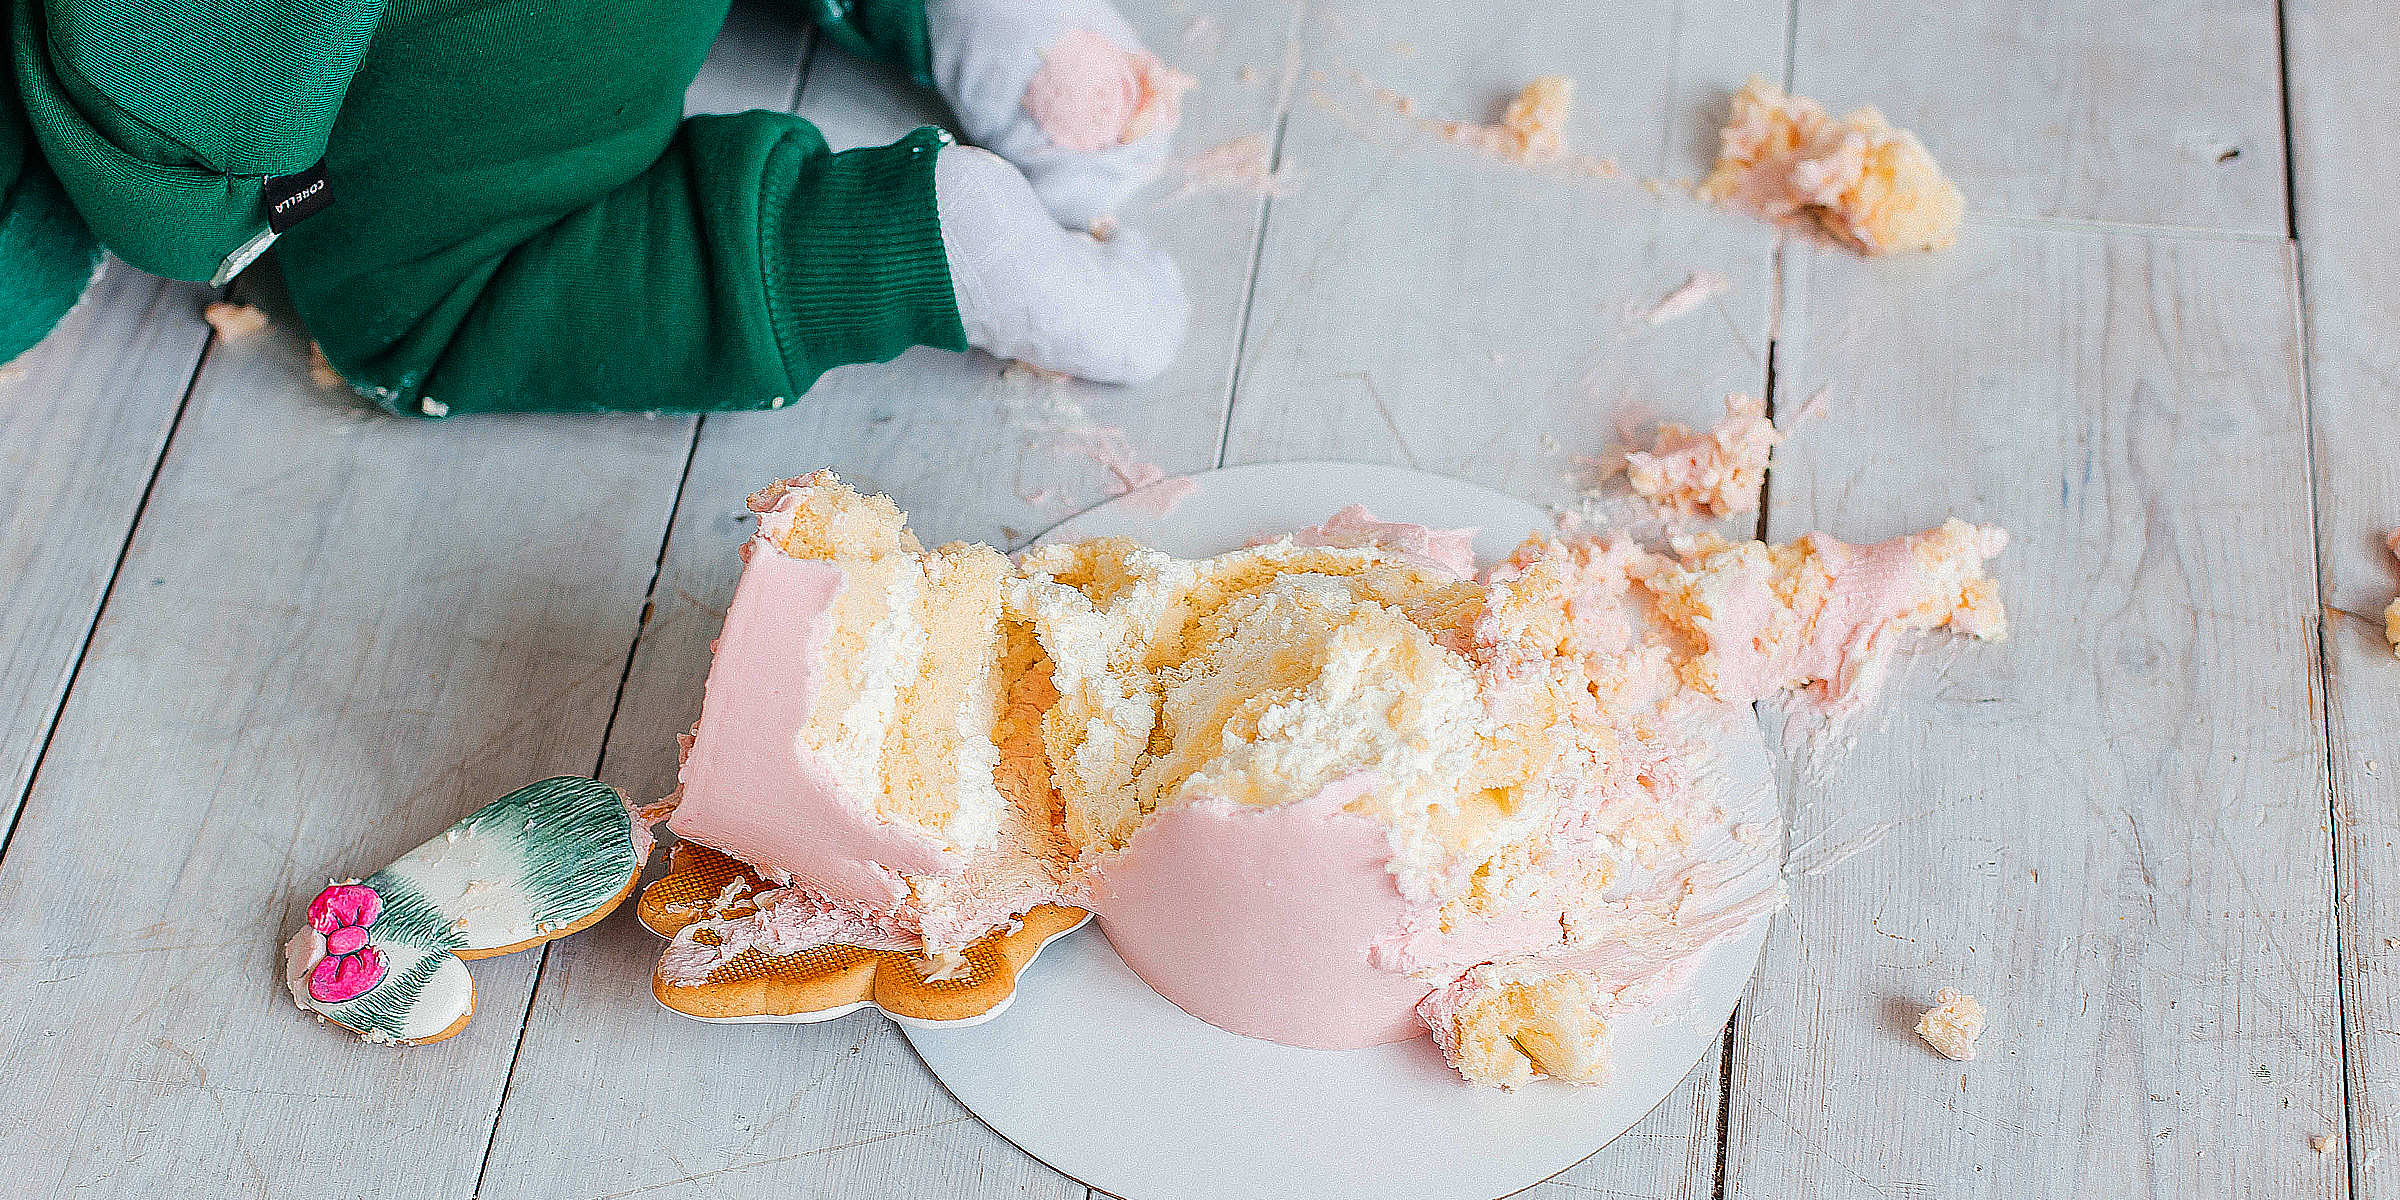 Gâteau tombé sur le sol | Source : Shutterstock